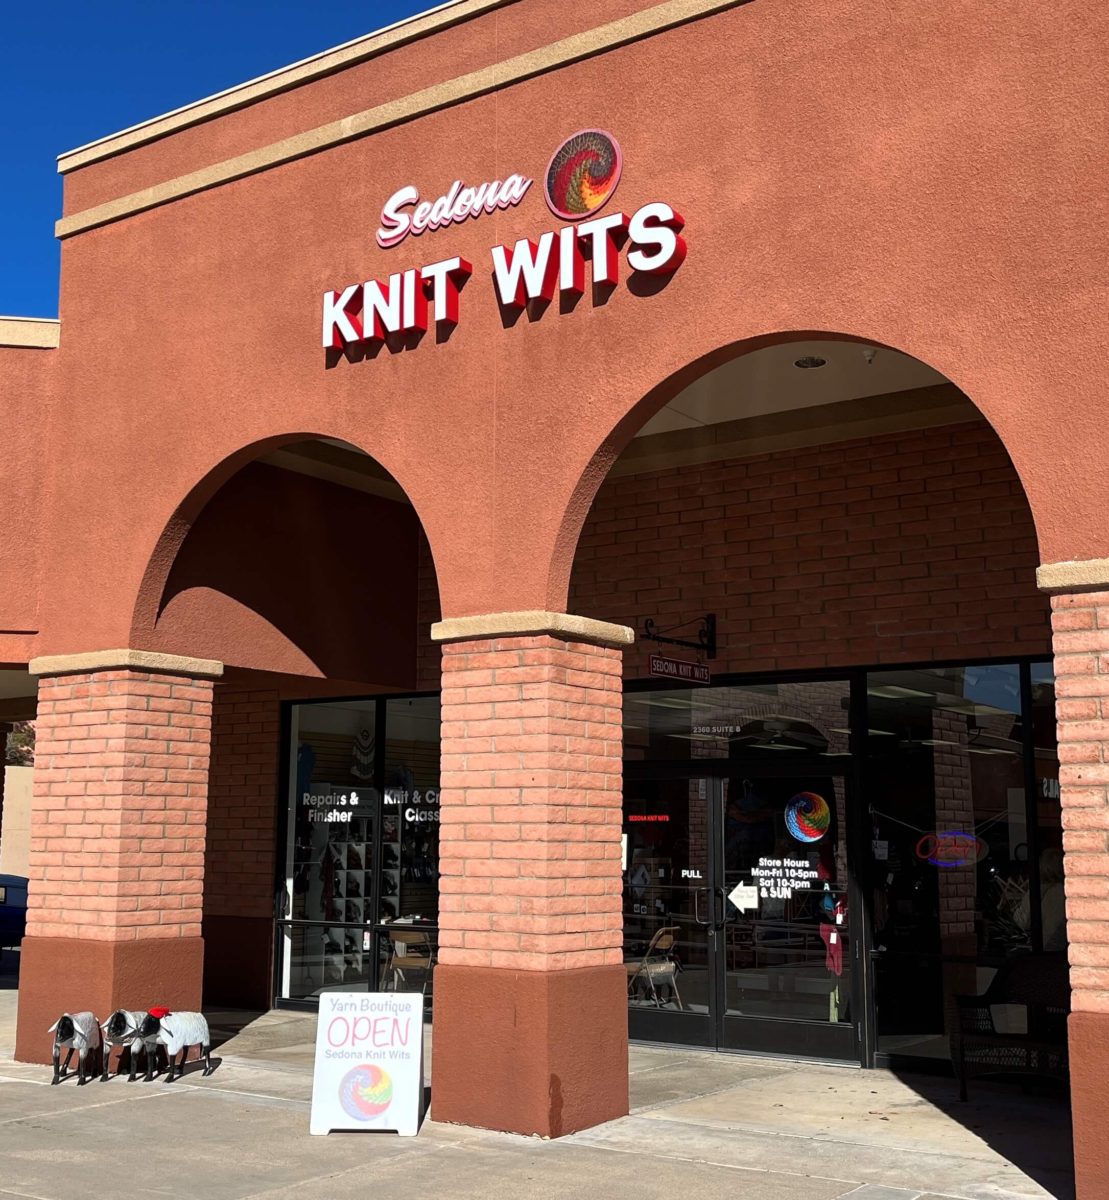 the exterior of Sedona Knit Wits, a yarn shop in Sedona, Arizona